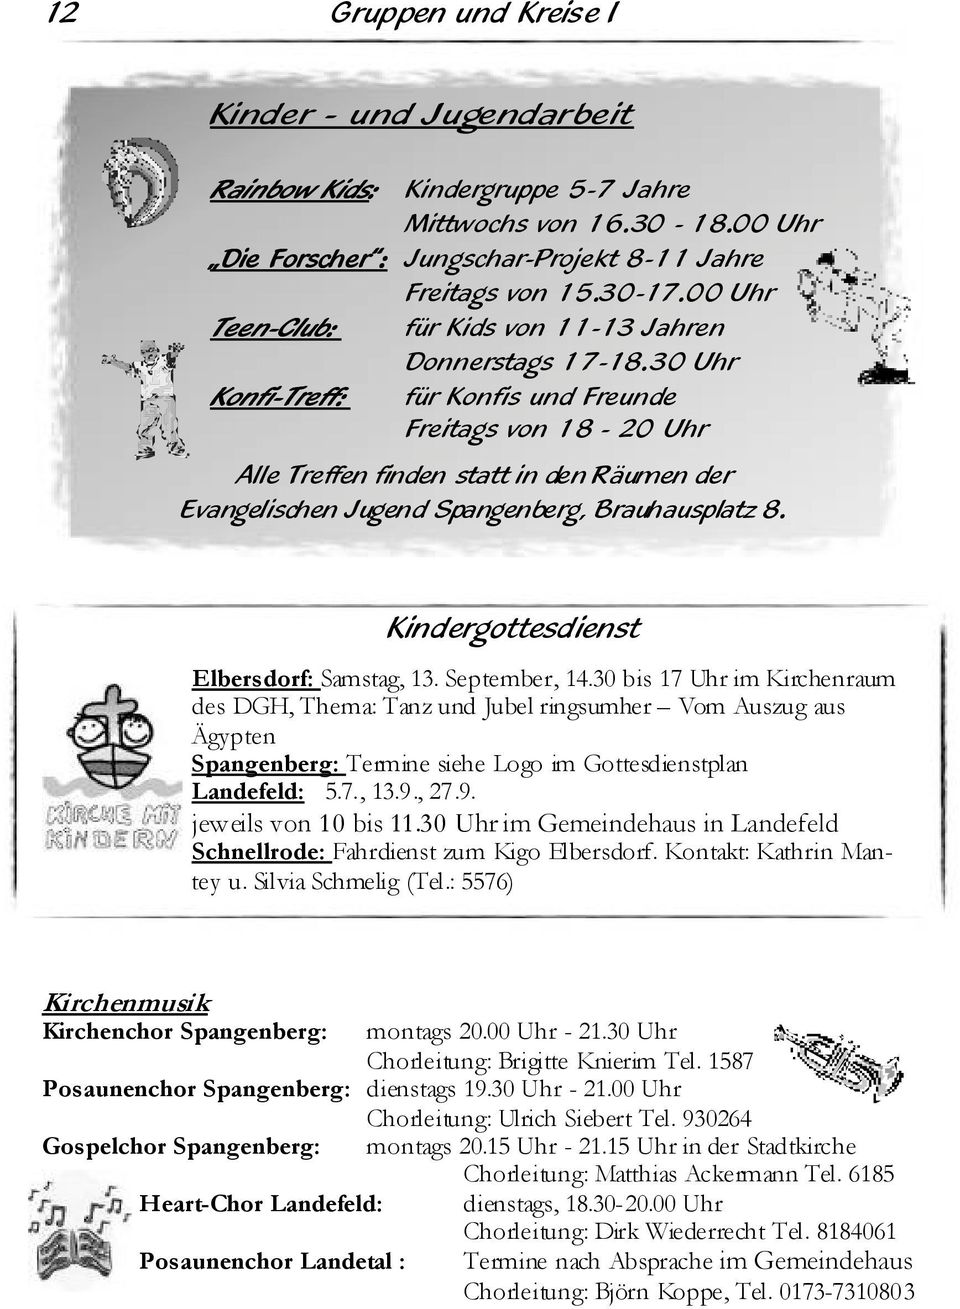 30 Uhr Konfi-Treff: für Konfis und Freunde Freitags von 18-20 Uhr Alle Treffen finden statt in den Räumen der Evangelischen Jugend Spangenberg, Brauhausplatz 8.